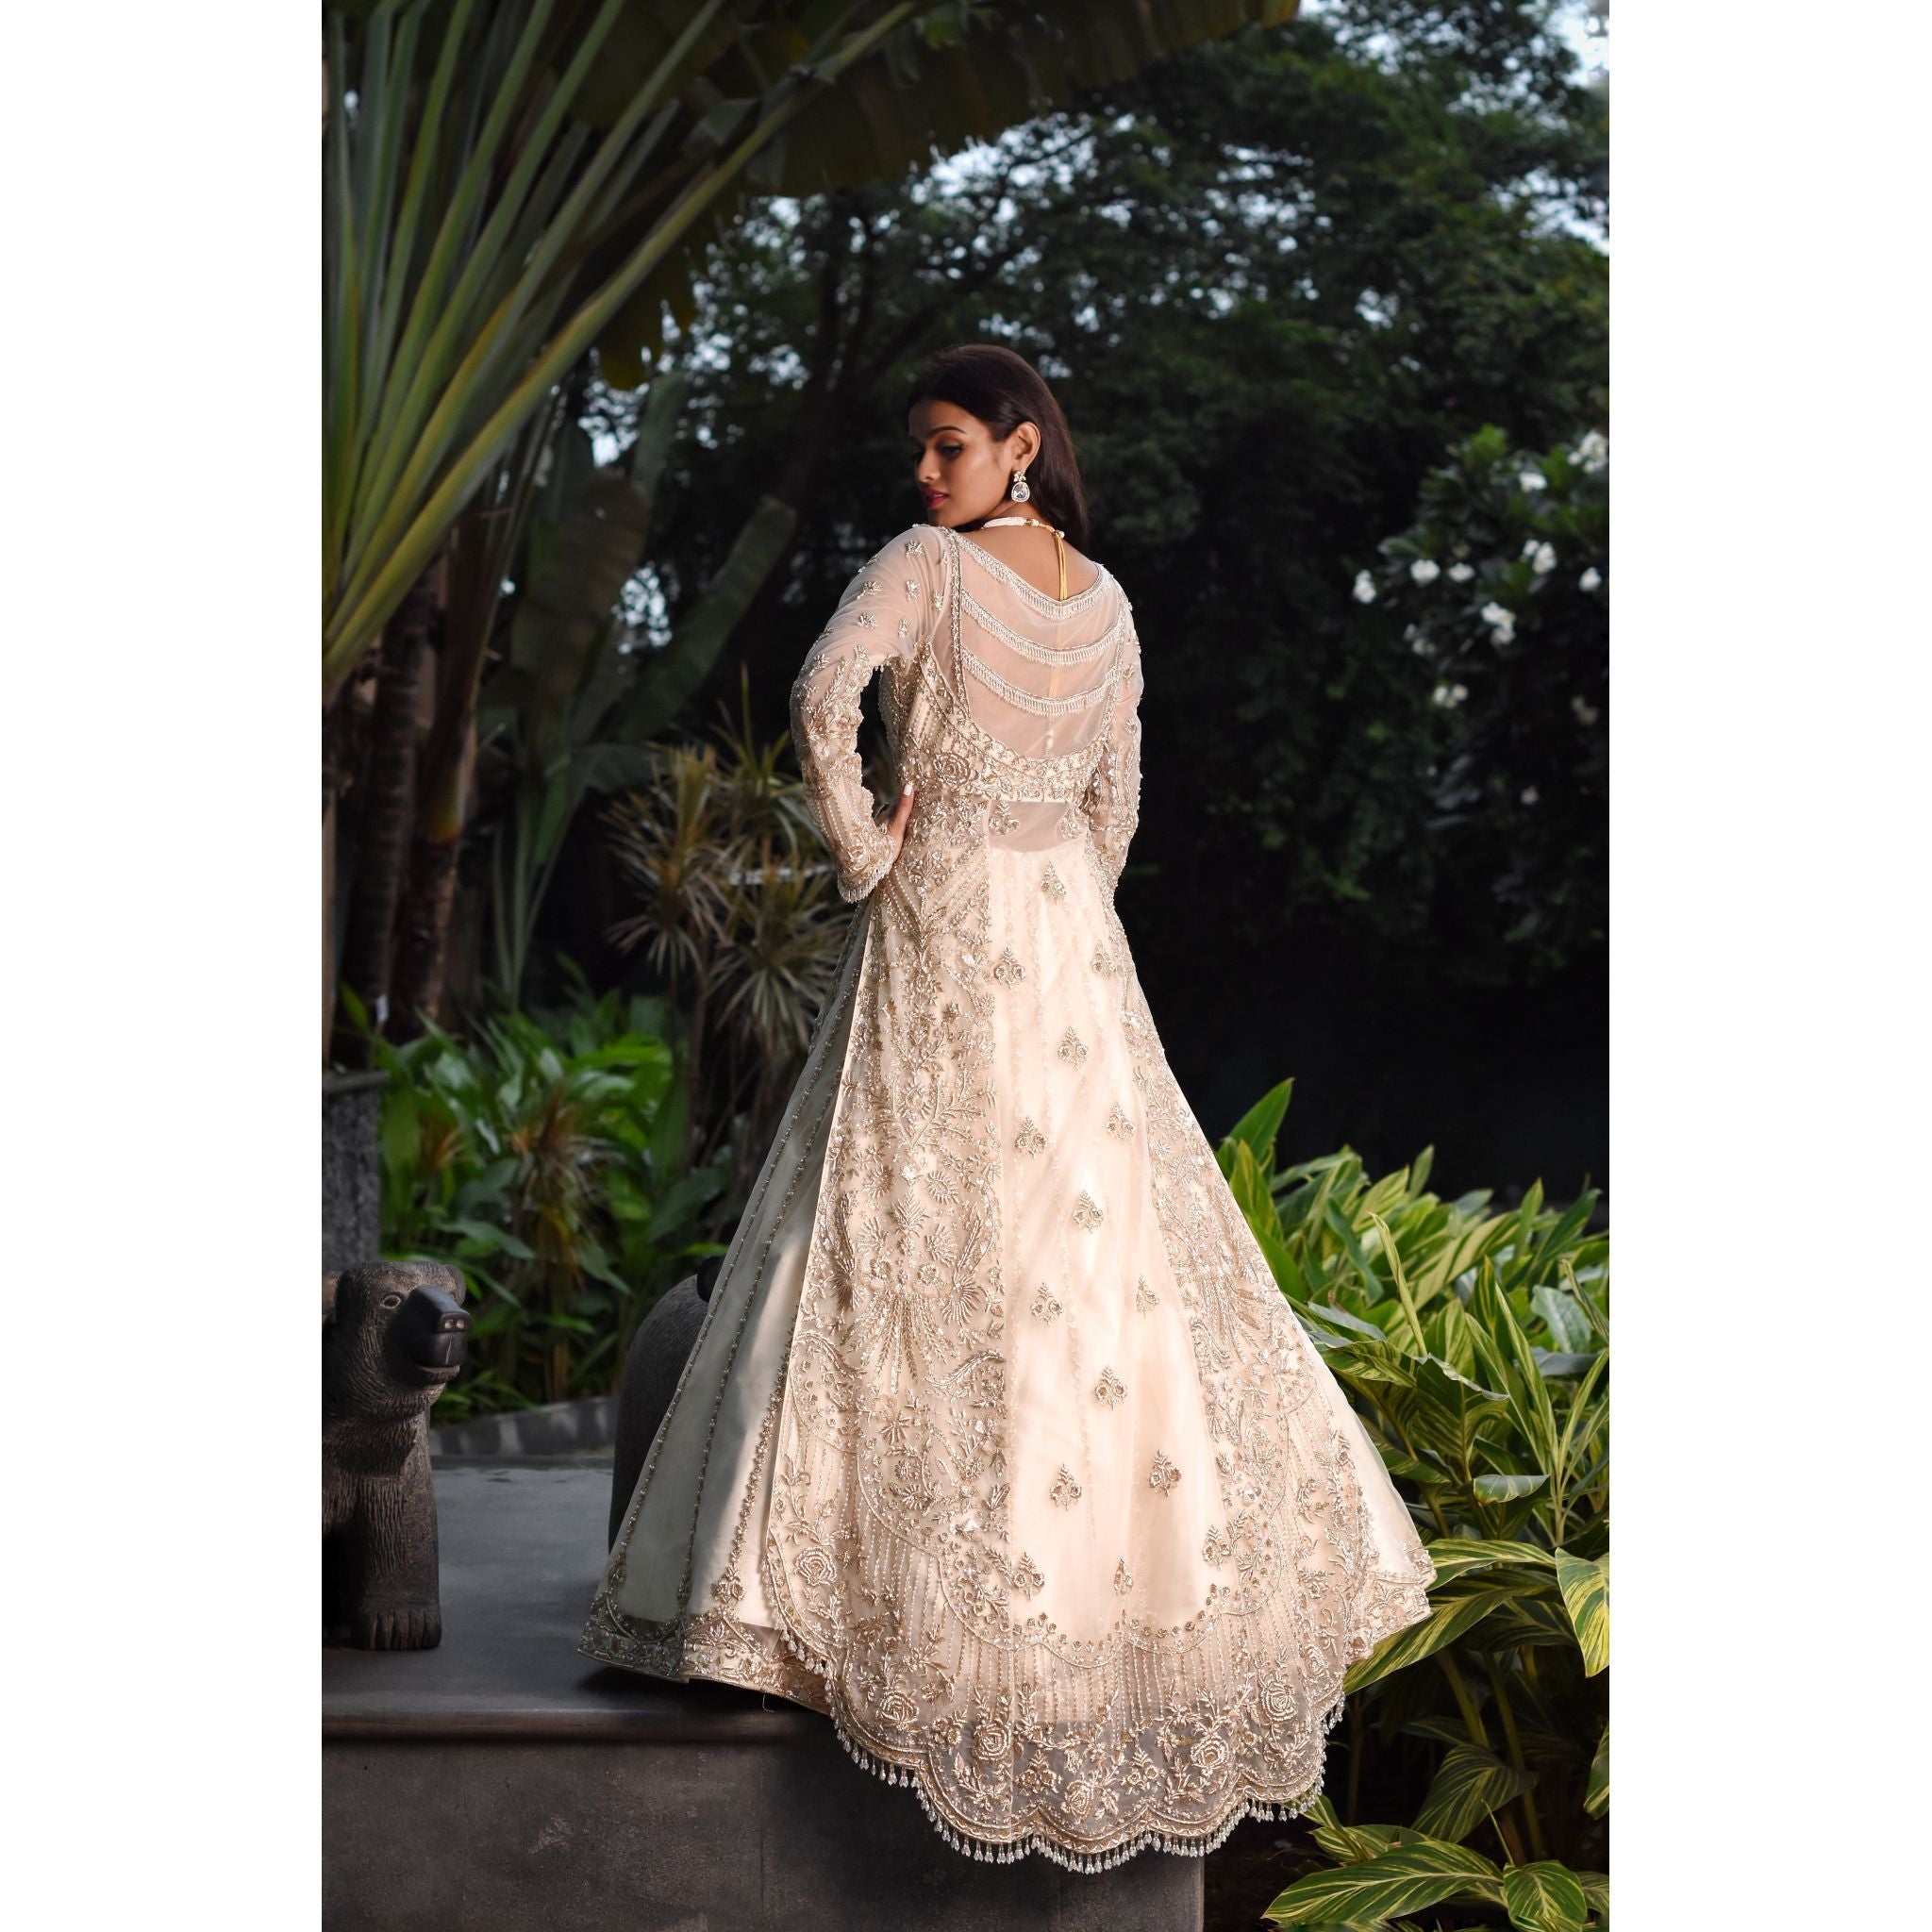 Ivory And Gold Anarkali Lehenga Set - Indian Designer Bridal Wedding Outfit